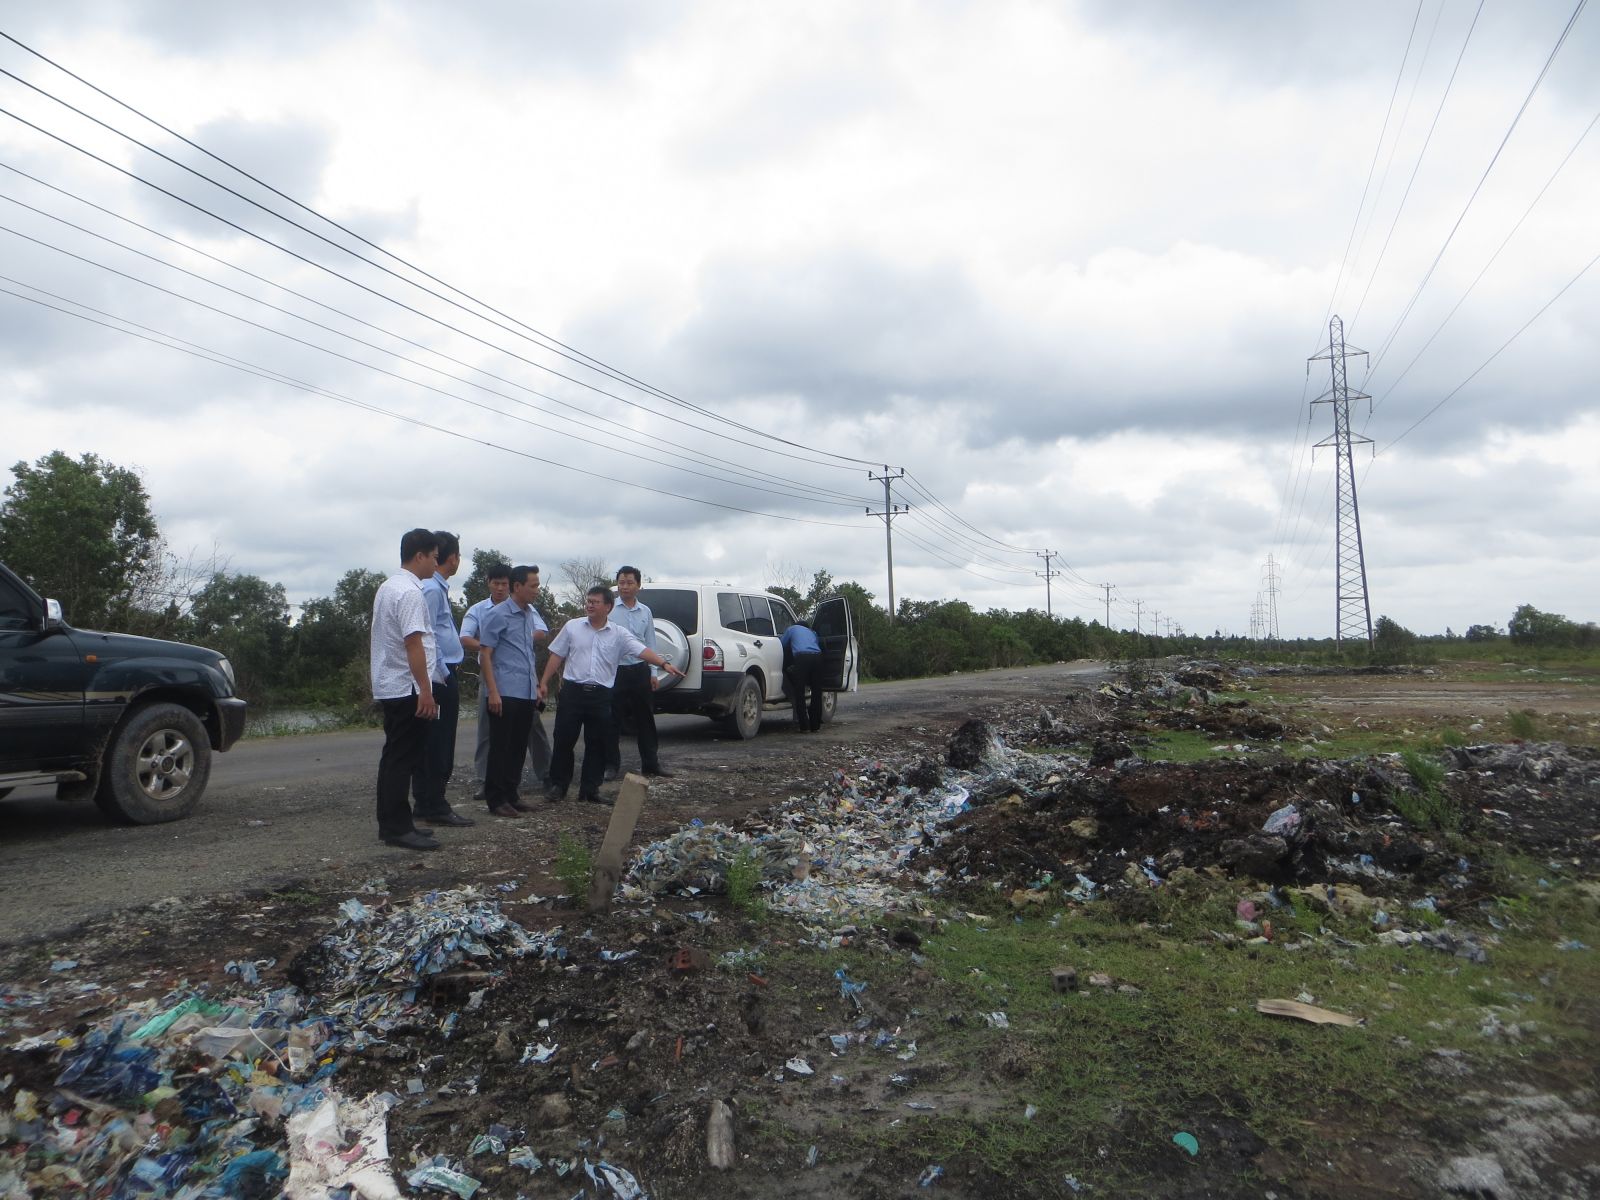 Ngành chức năng đến kiểm tra việc lén lút đổ rác bừa bãi ở một tuyến đường gần khu công nghiệp